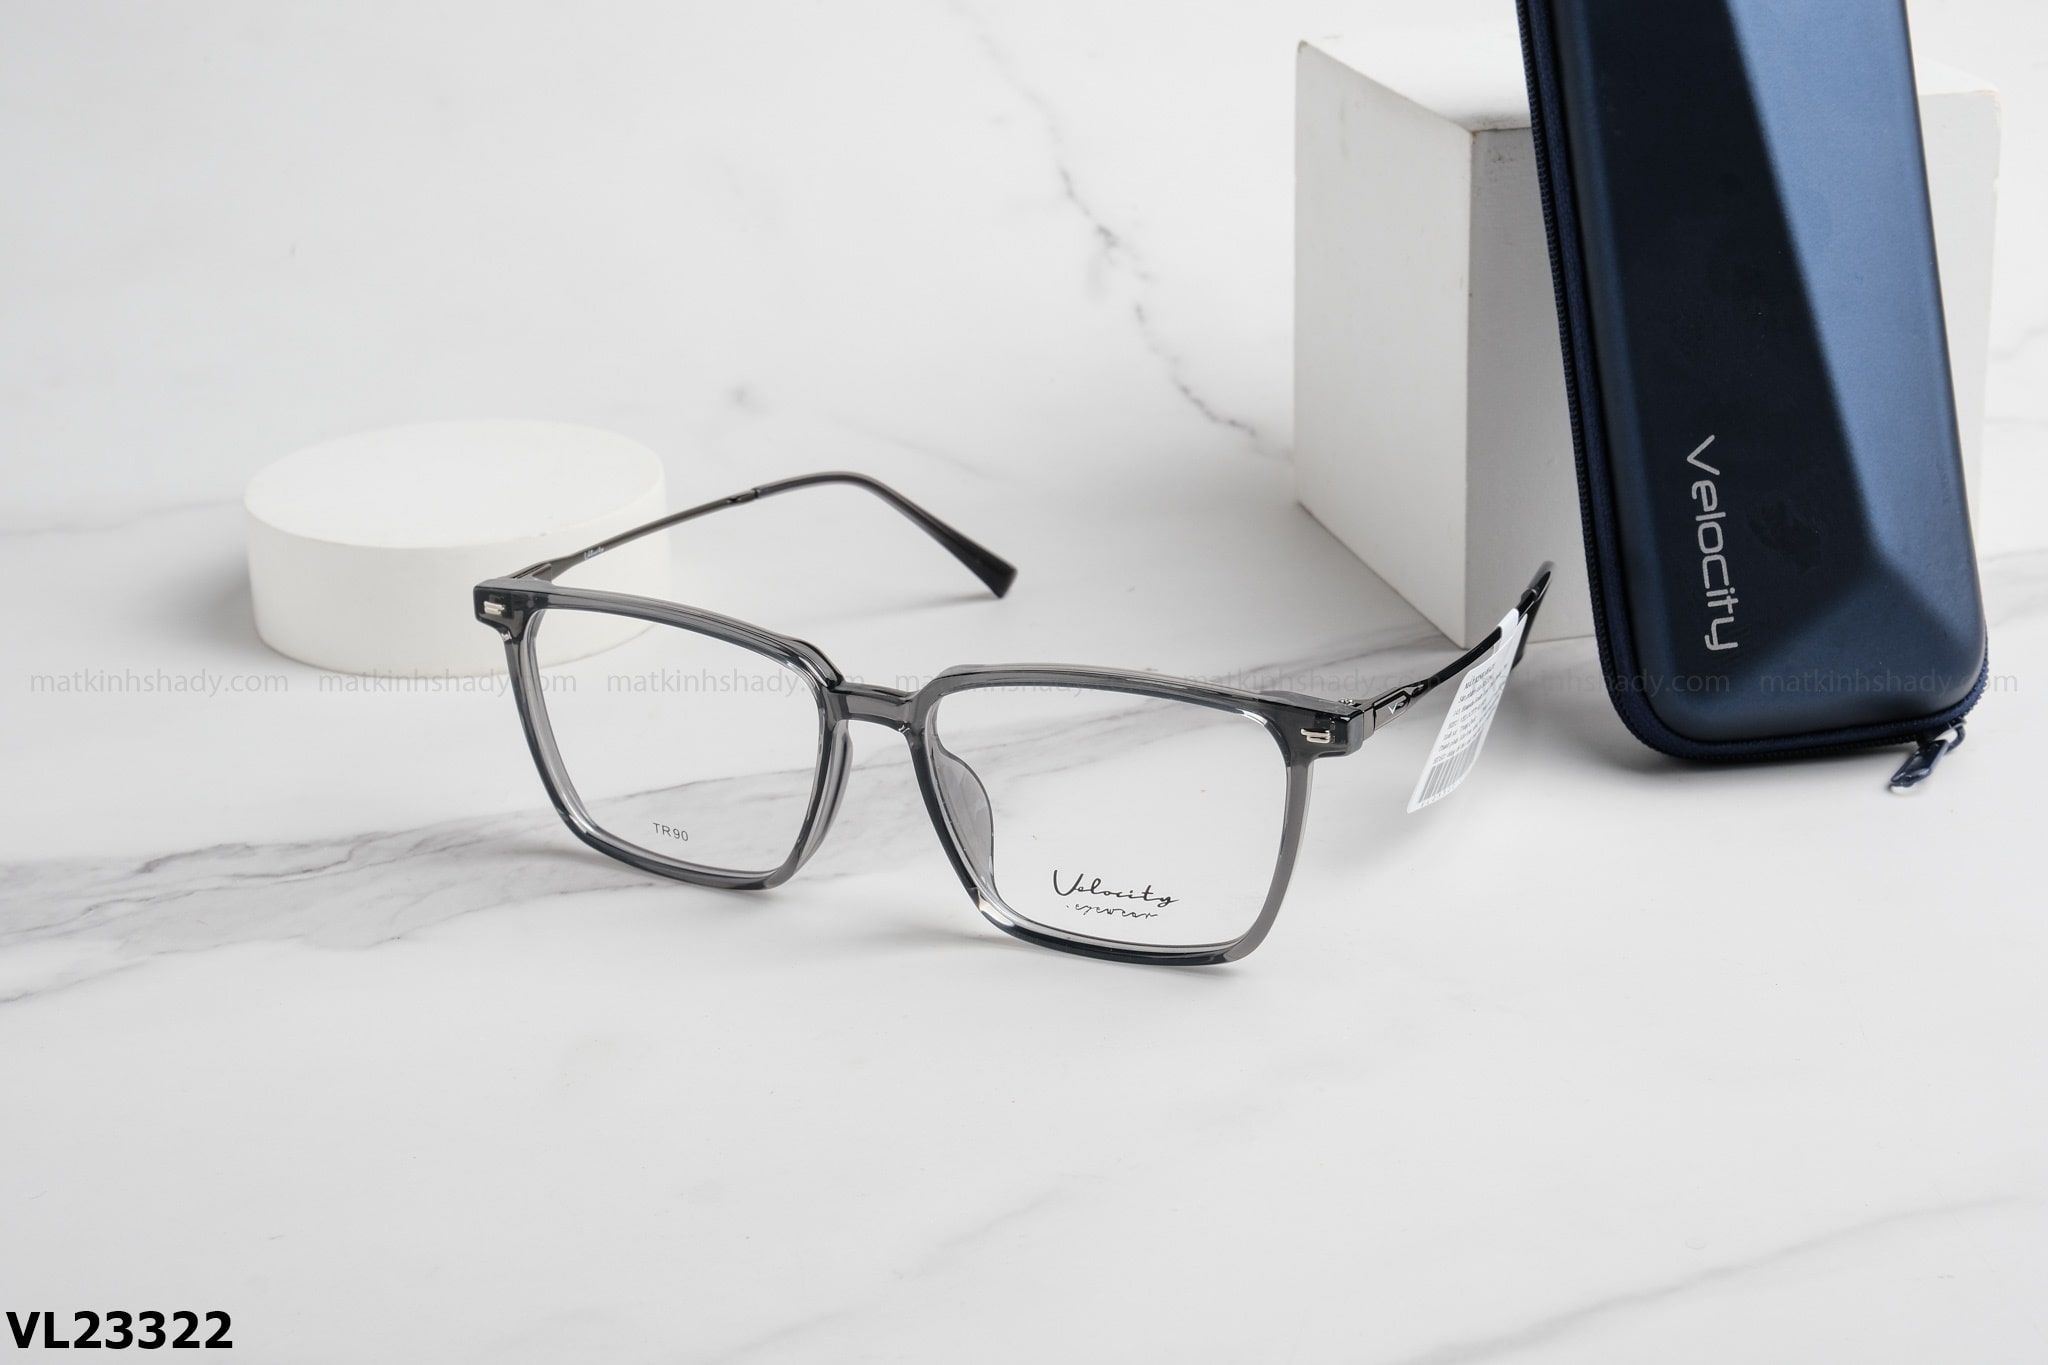  Velocity Eyewear - Glasses - VL23322 